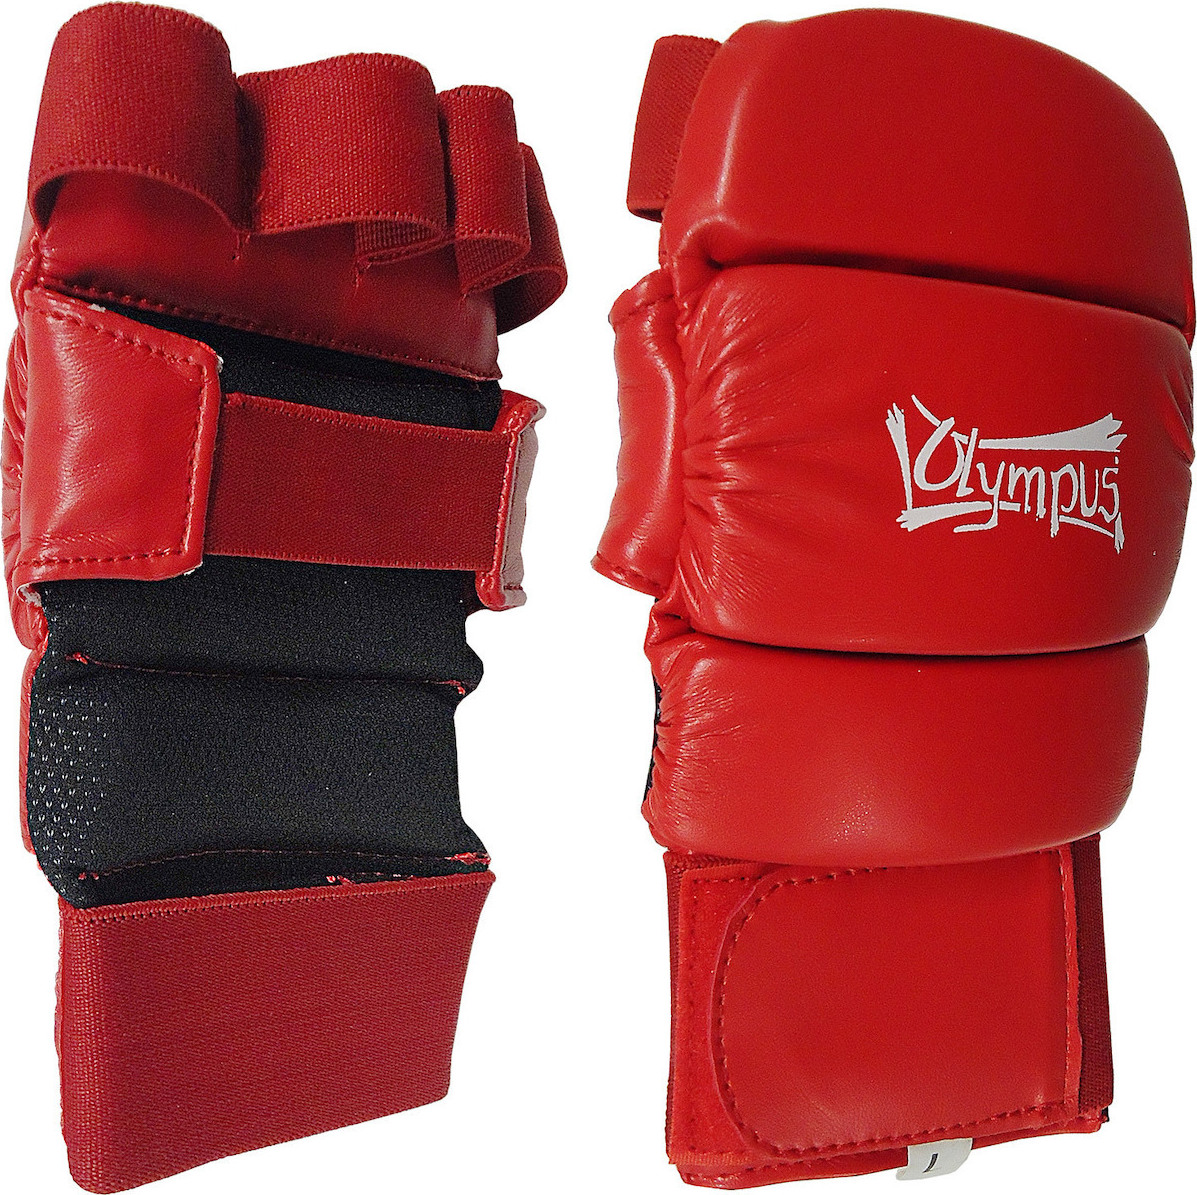 Olympus Sport Jiu-Jitsu Sparring Gloves 48014421 Red